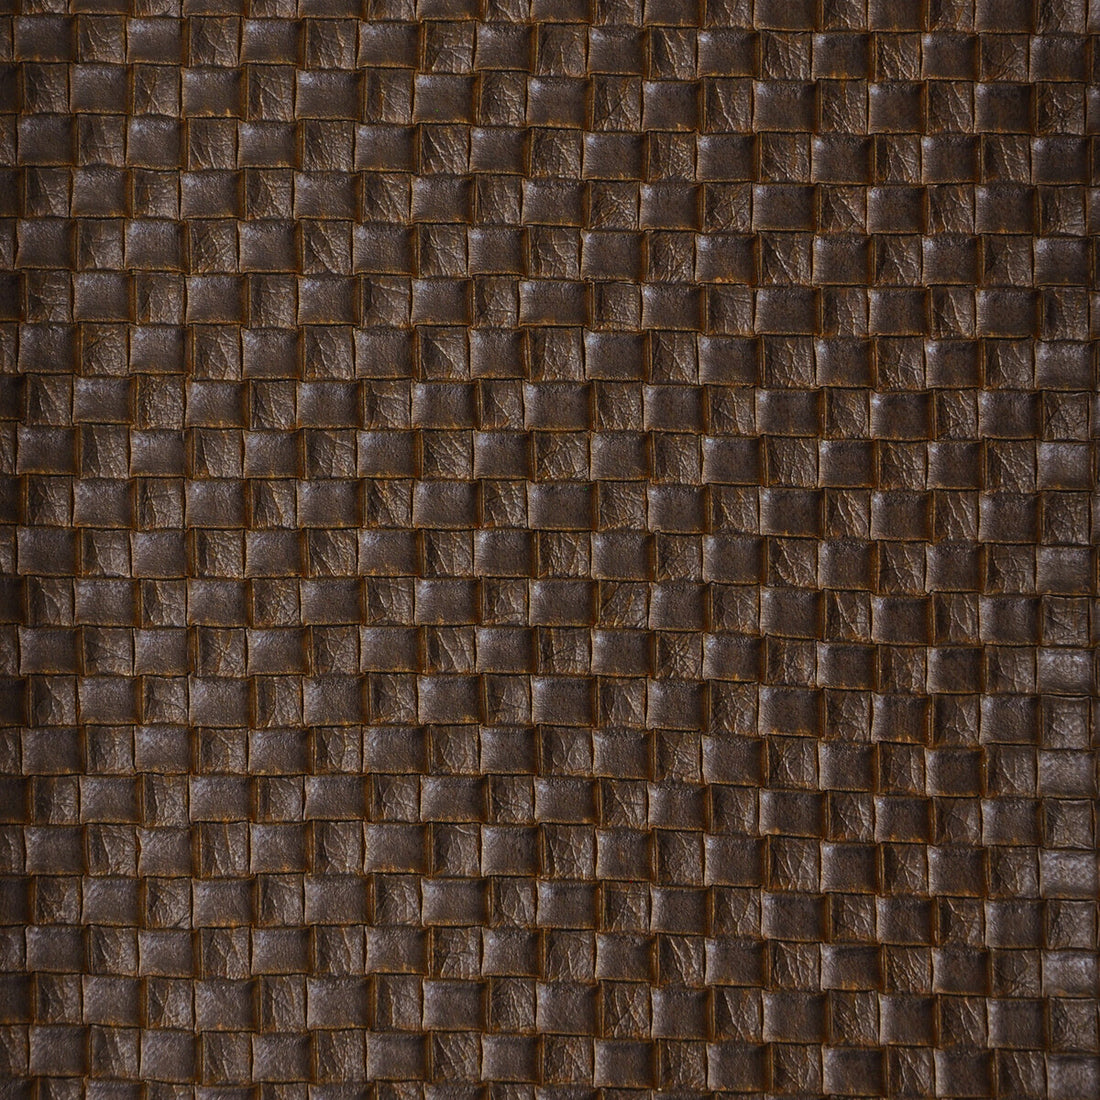 Kravet Design fabric in olia-6 color - pattern OLIA.6.0 - by Kravet Design